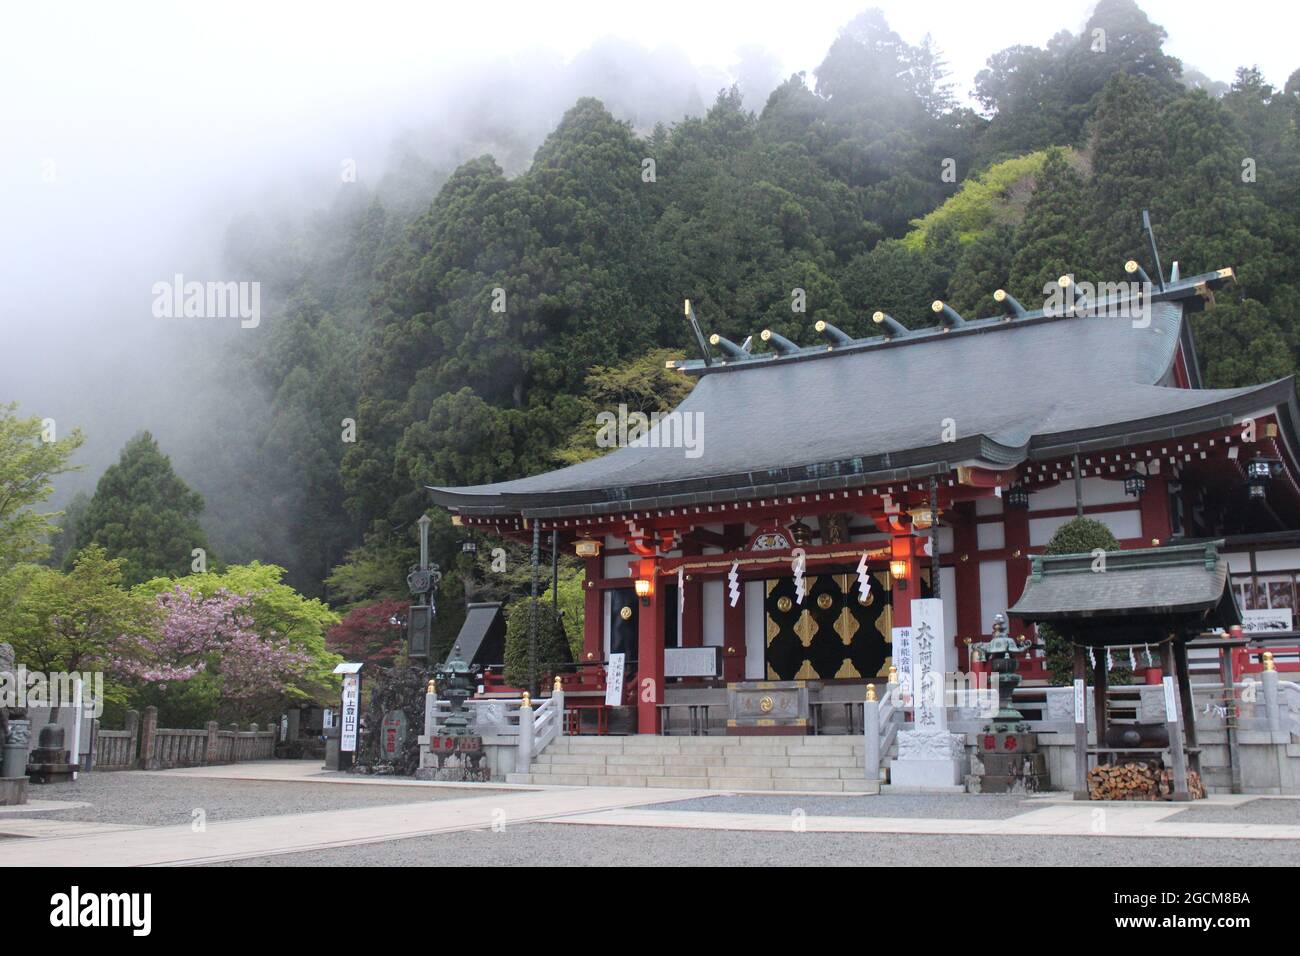 Tempel auf einem Berg in Japan mit aufziehendem Nebel im Wald Stock Photo